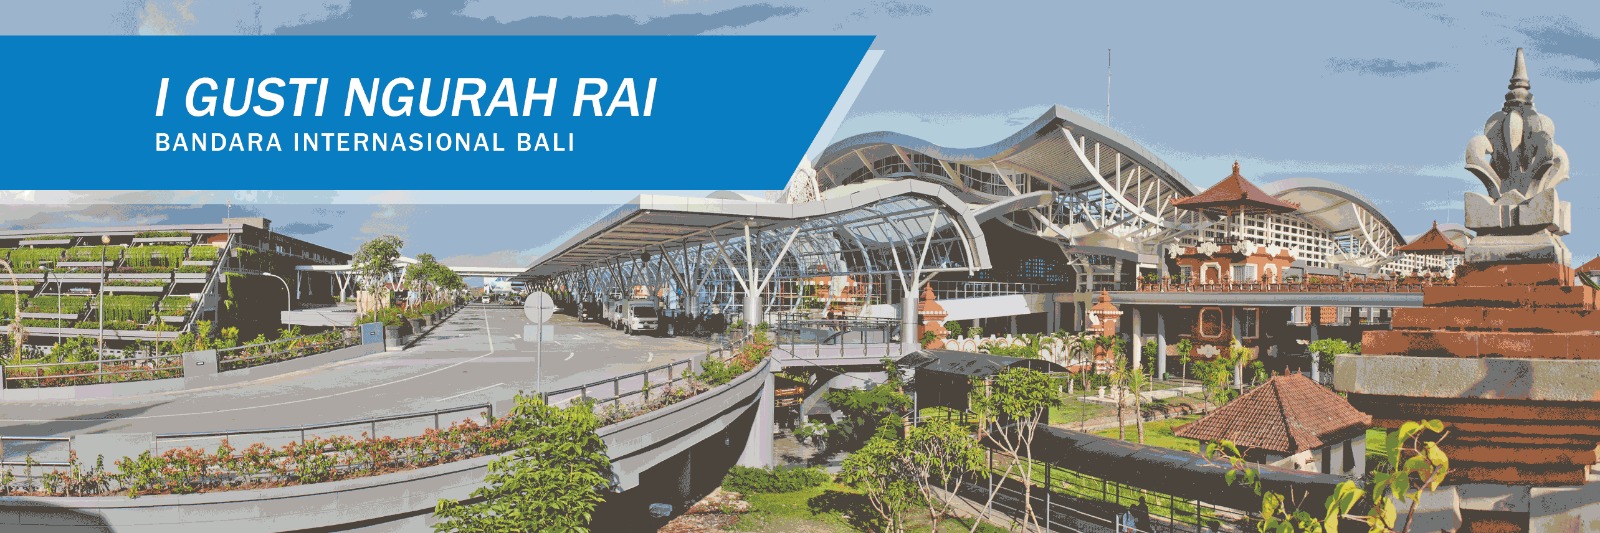  Jasa Transportasi atau Taxi di Bandara Ngurah Rai Bali